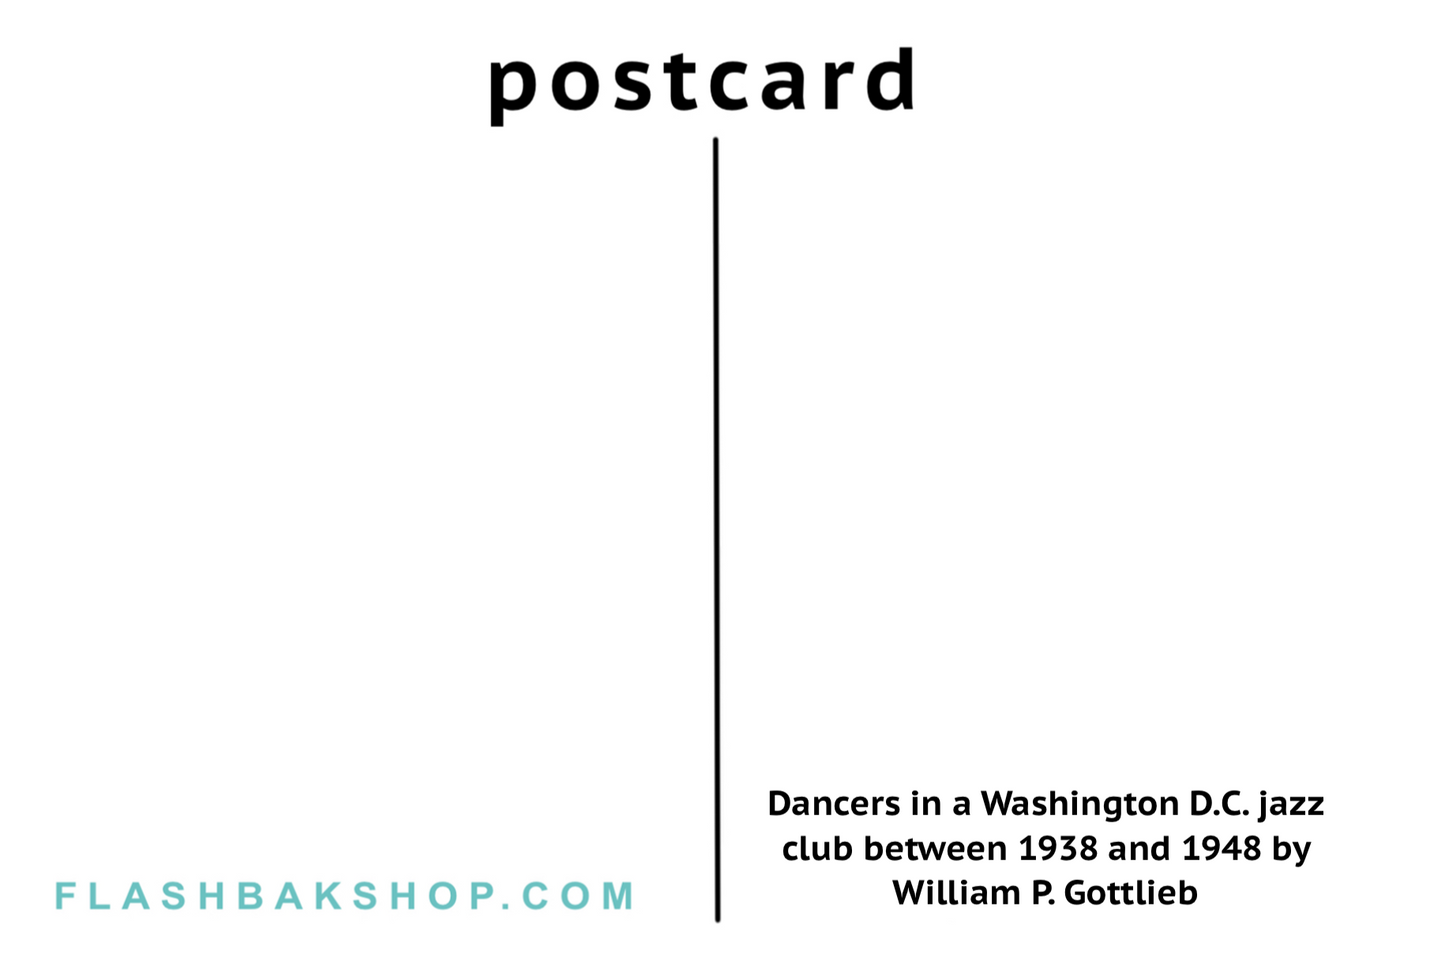 Danseurs dans un club de jazz de Washington DC entre 1938 et 1948 par William P. Gottlieb - Carte postale